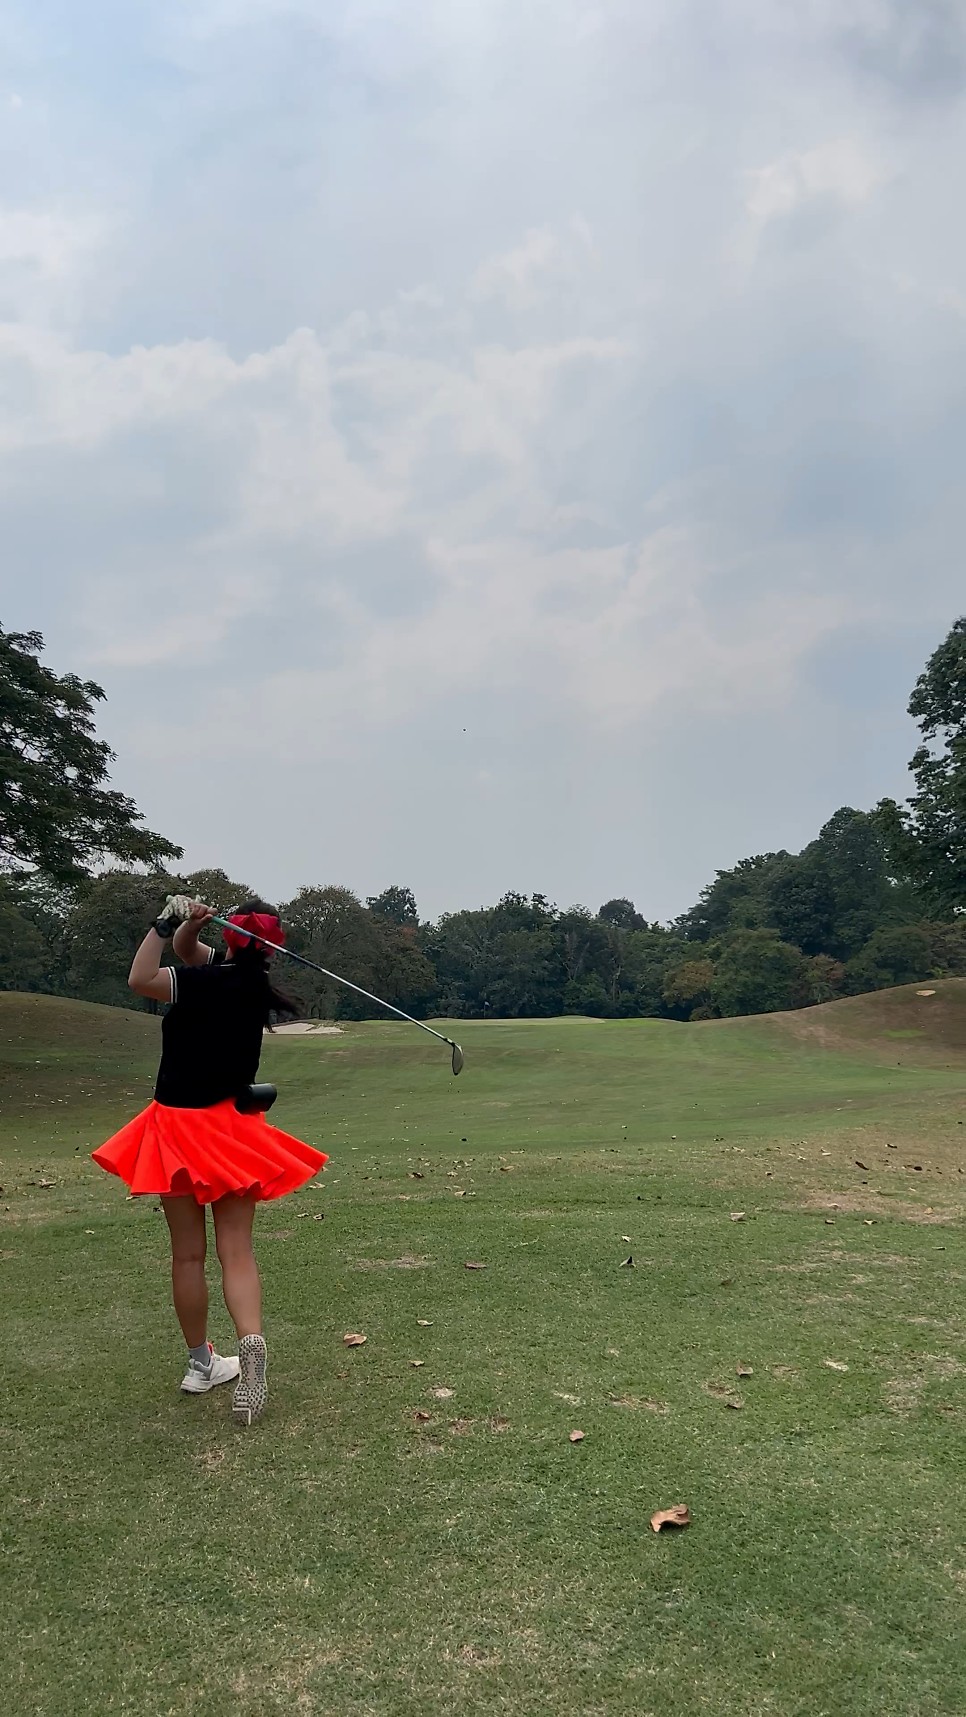 말레이시아 쿠알라룸푸르 골프여행 날씨와 골프복장 정보